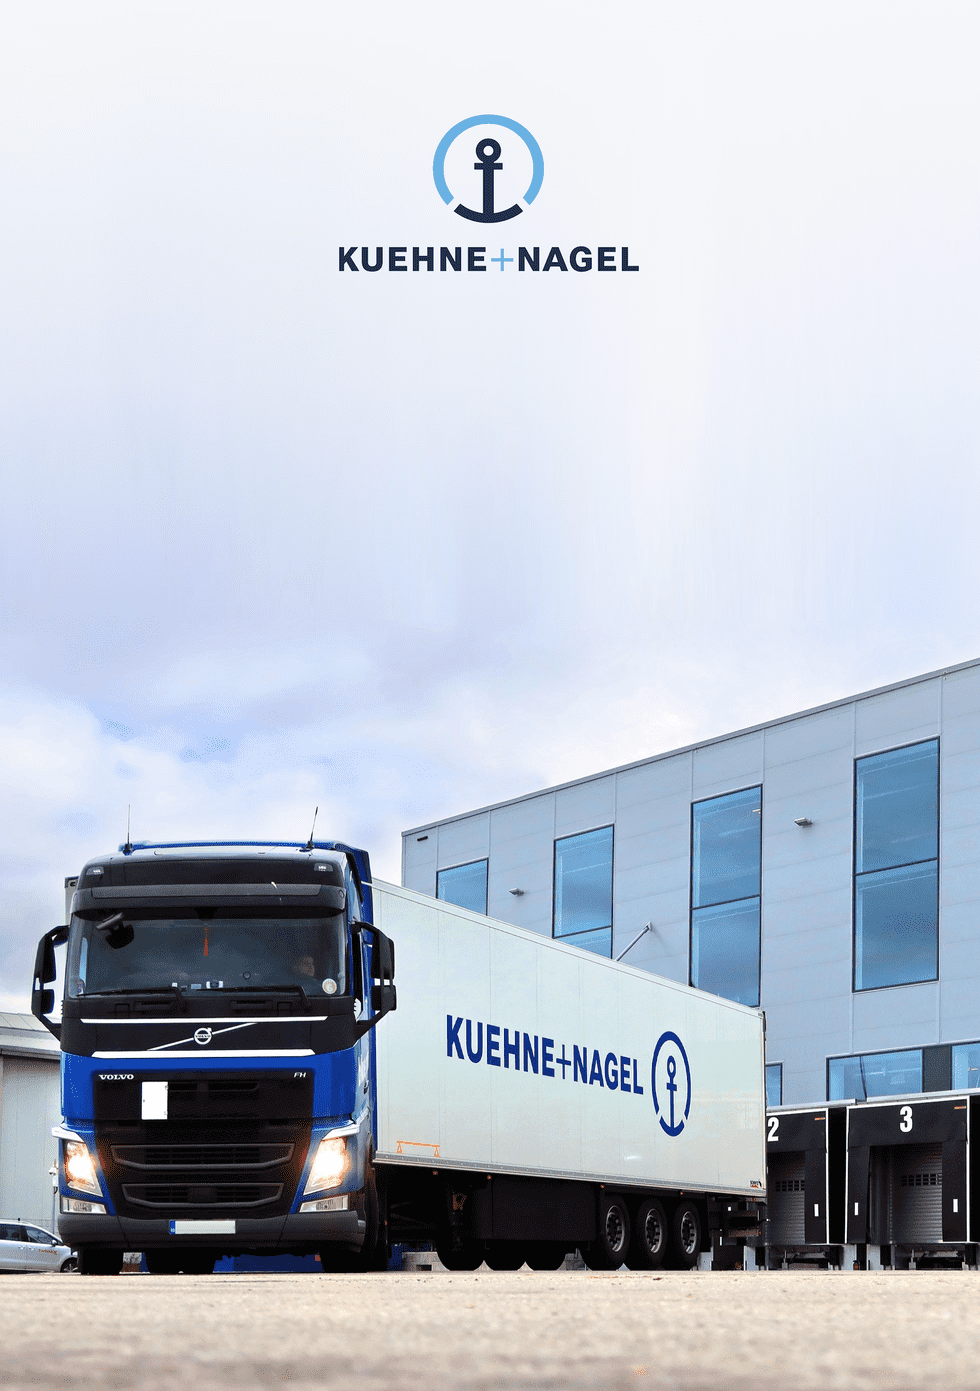 Kuehne + Nagel International AG